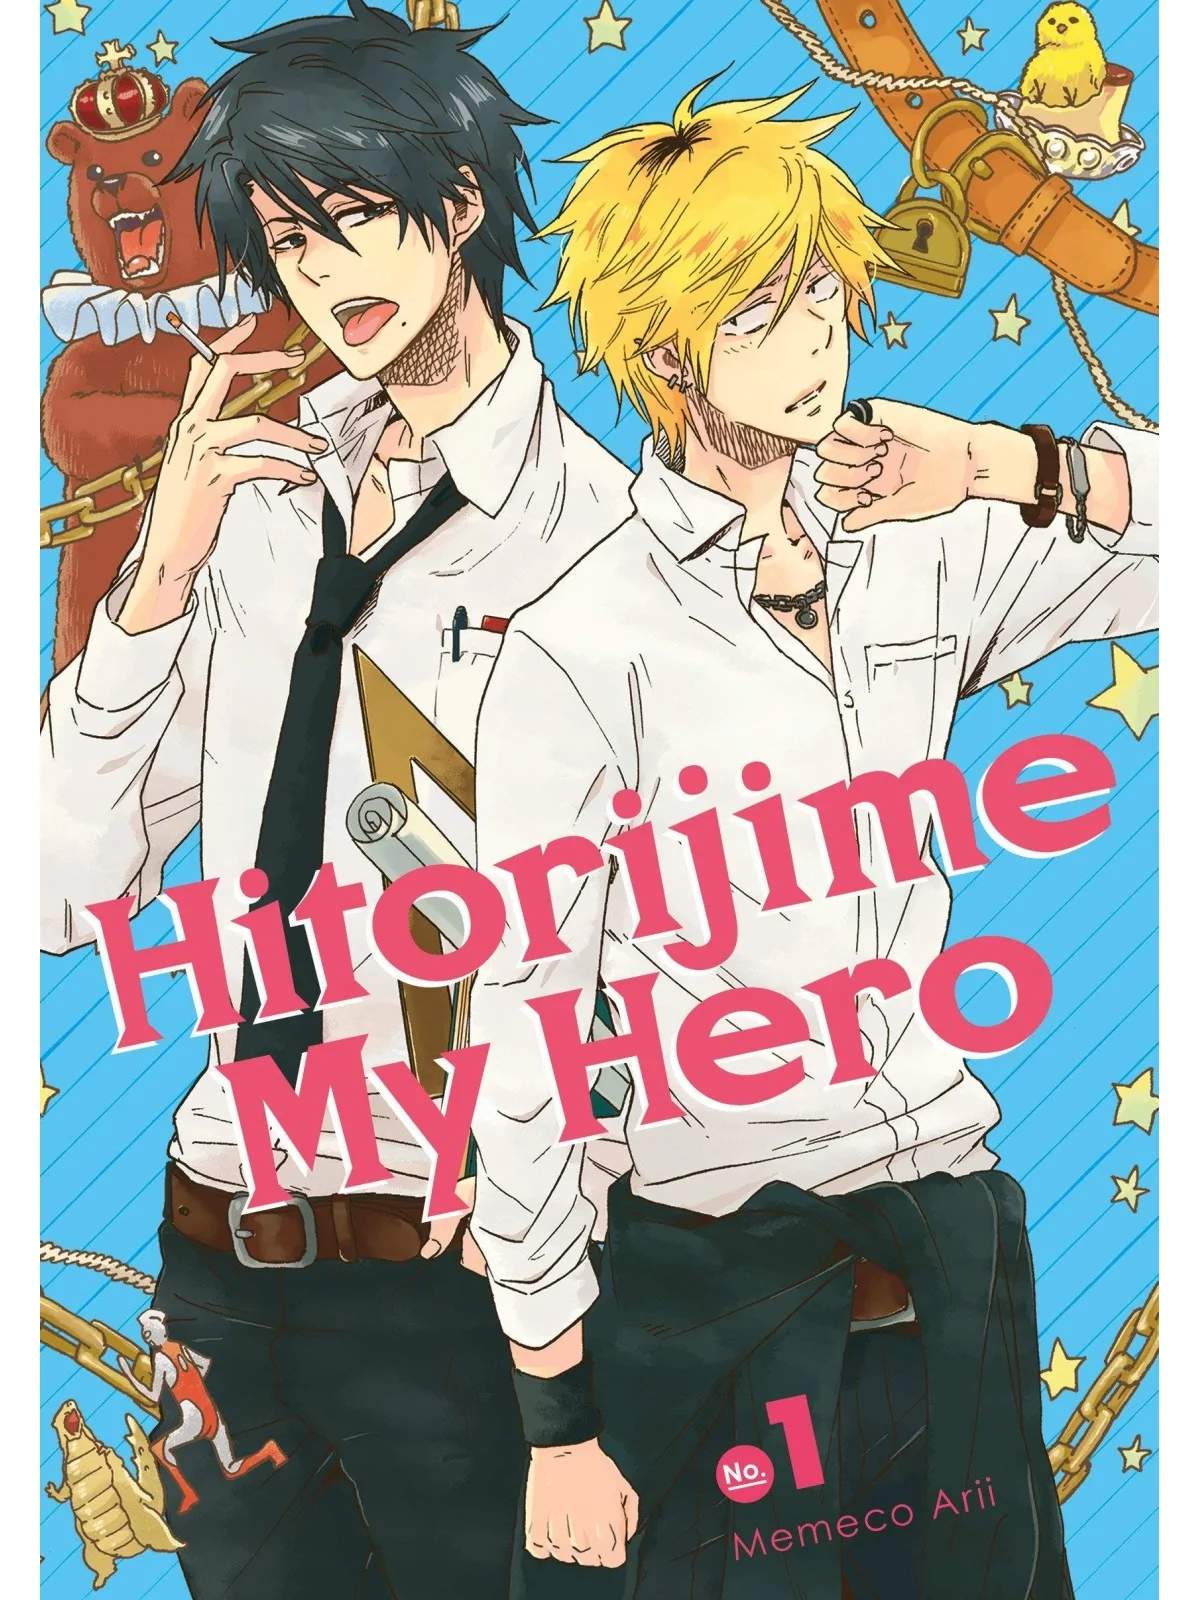 Comprar Hitorijime My Hero 01 barato al mejor precio 8,07 € de Editori